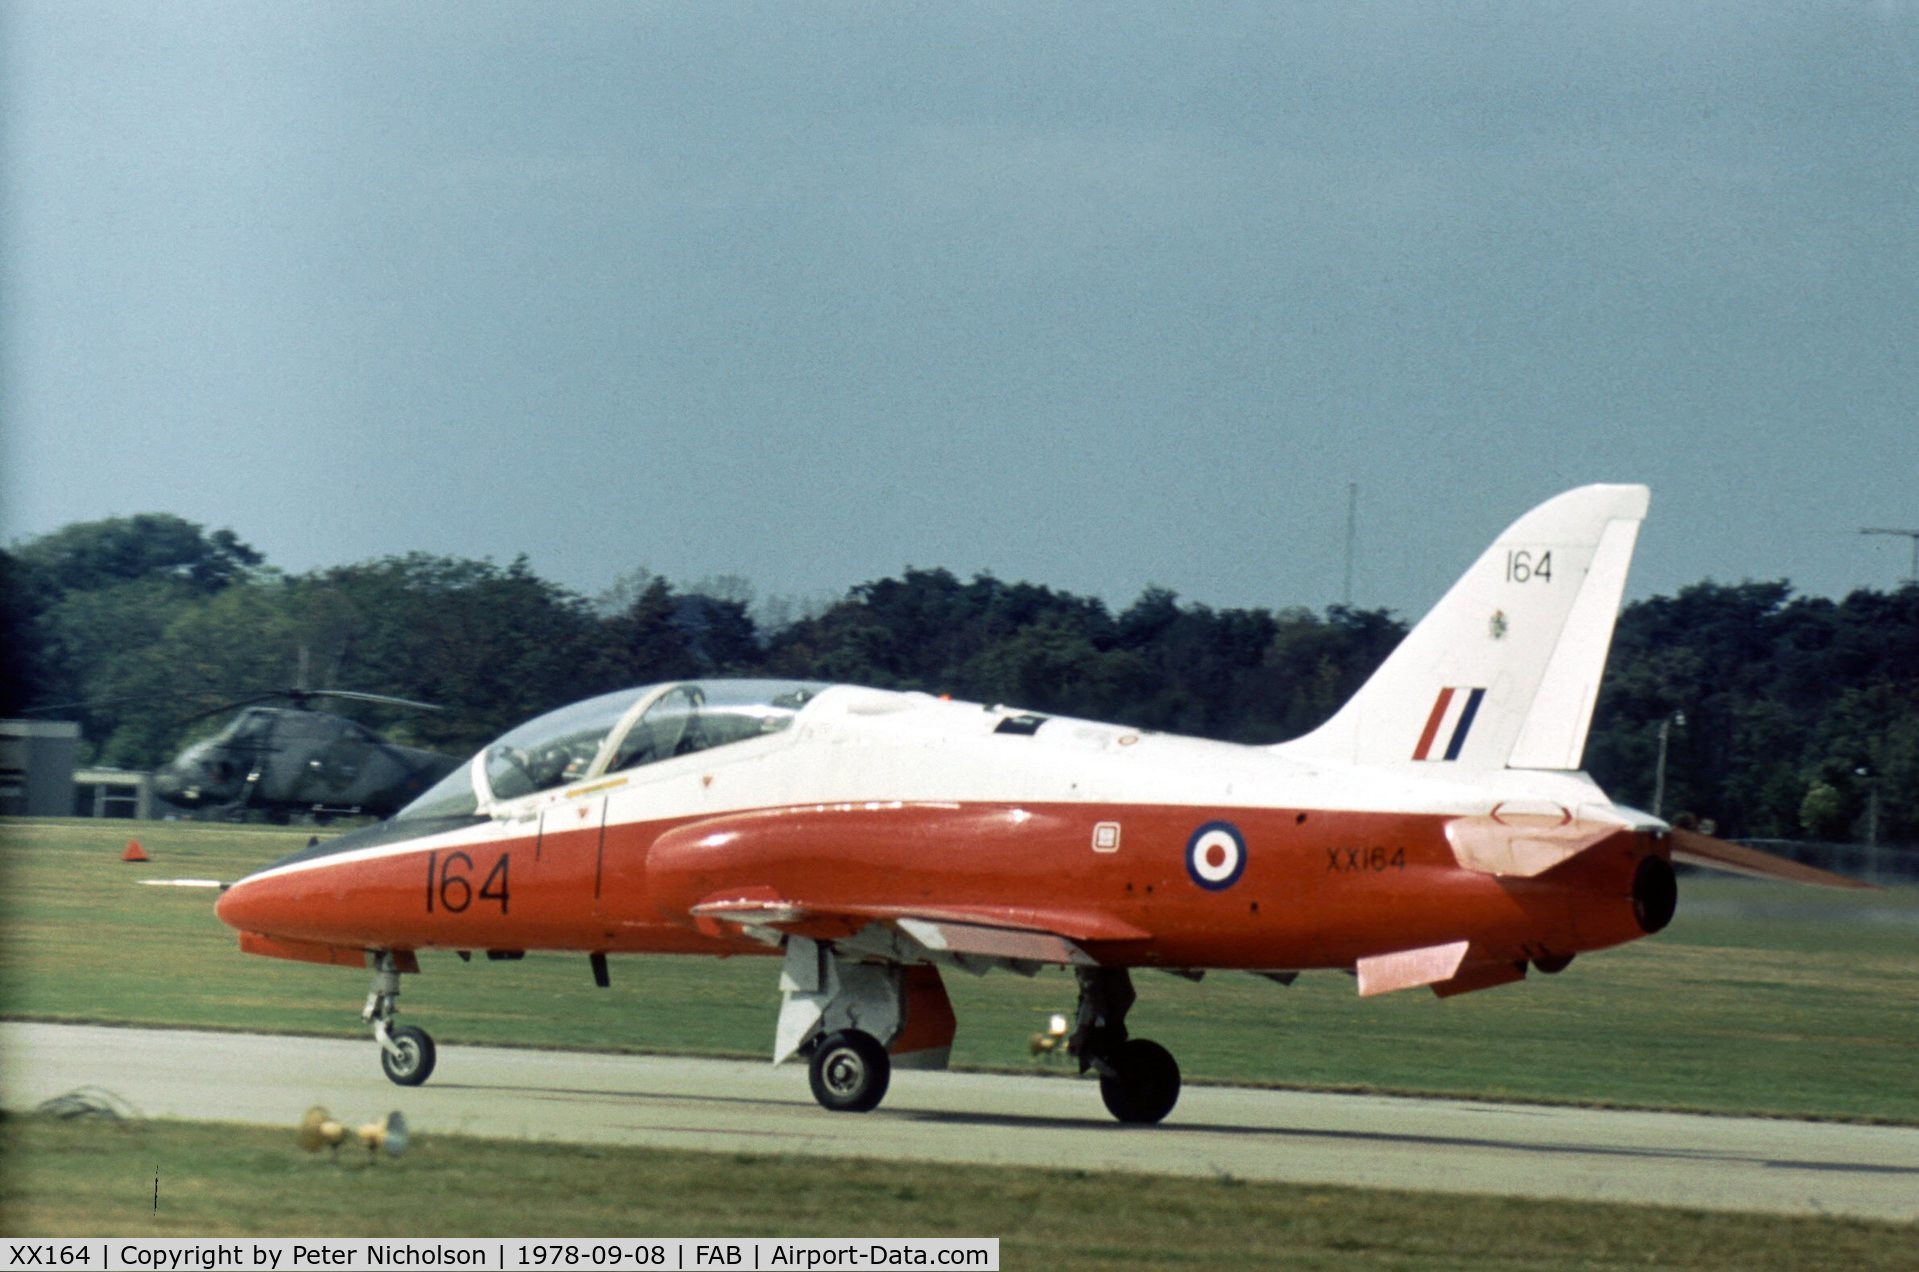 XX164, 1976 Hawker Siddeley Hawk T.1 C/N 011/312011, Hawk T.1 of 4 Flying Training School at the 1978 Farnborough Airshow.